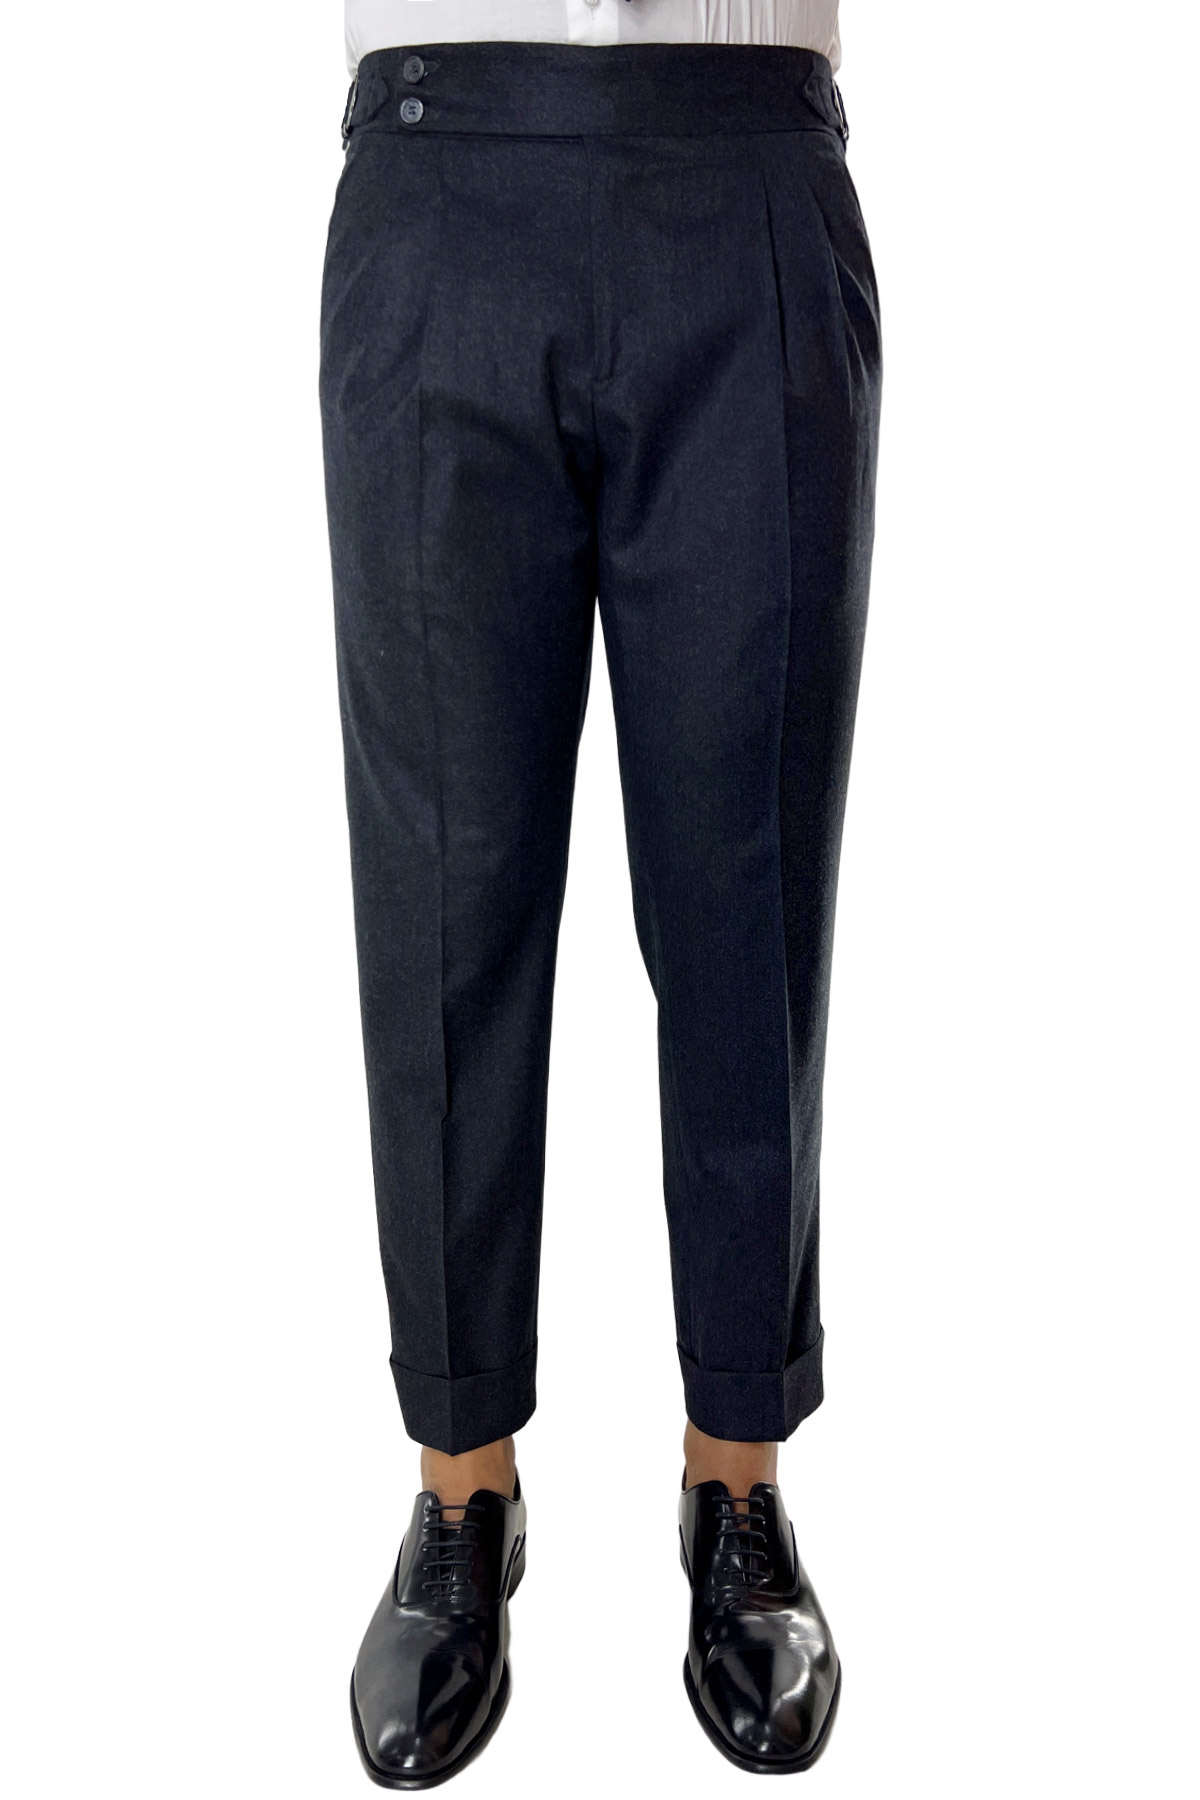 Pantalone uomo grigio scuro vita alta tasca america in lana flanella con pinces e fibbie laterali Vitale Barberis Canonico